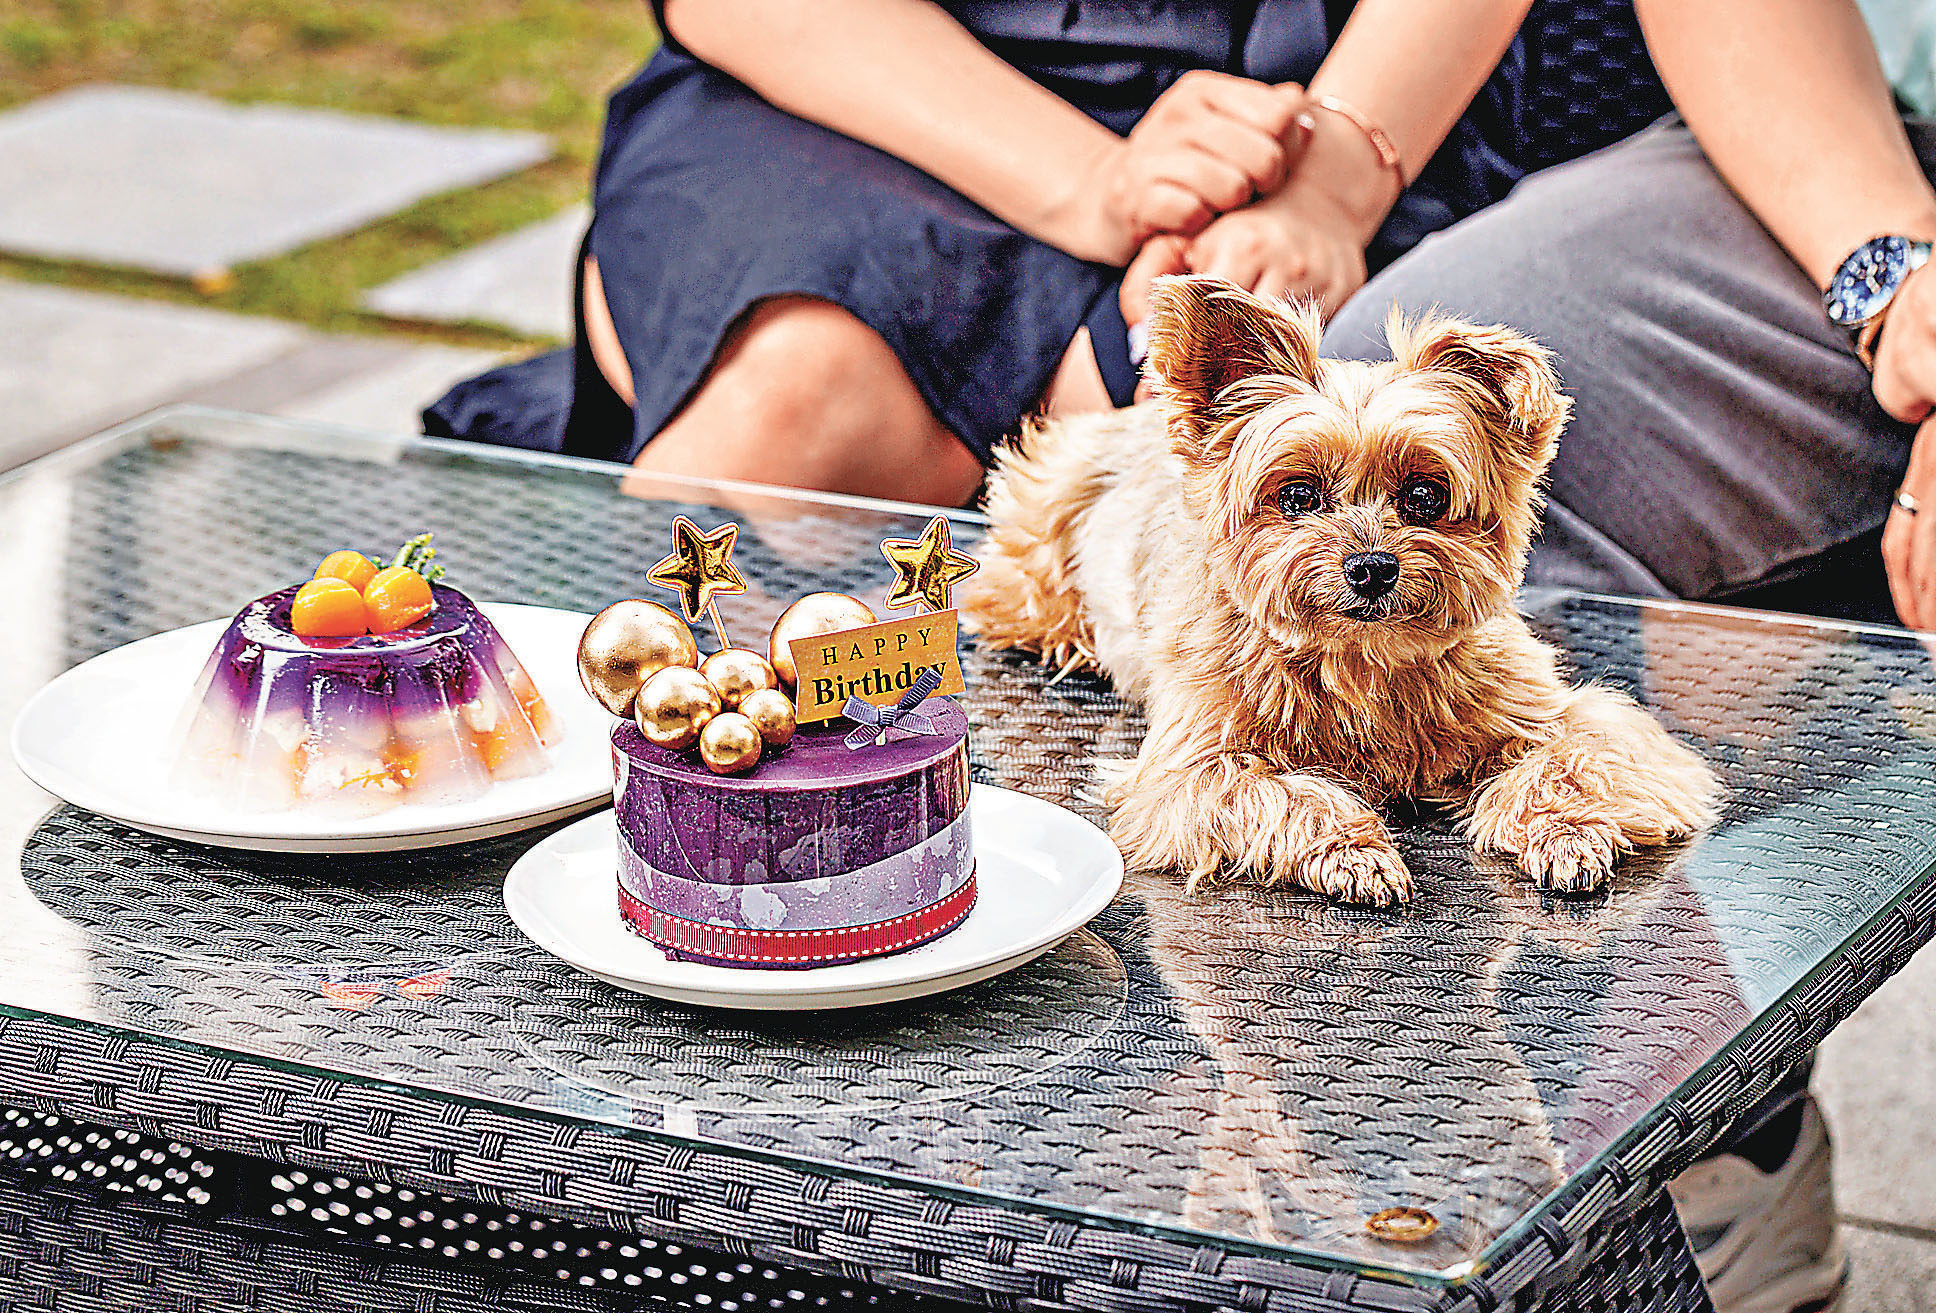 ■可預訂狗狗食用蛋糕為狗狗慶生。